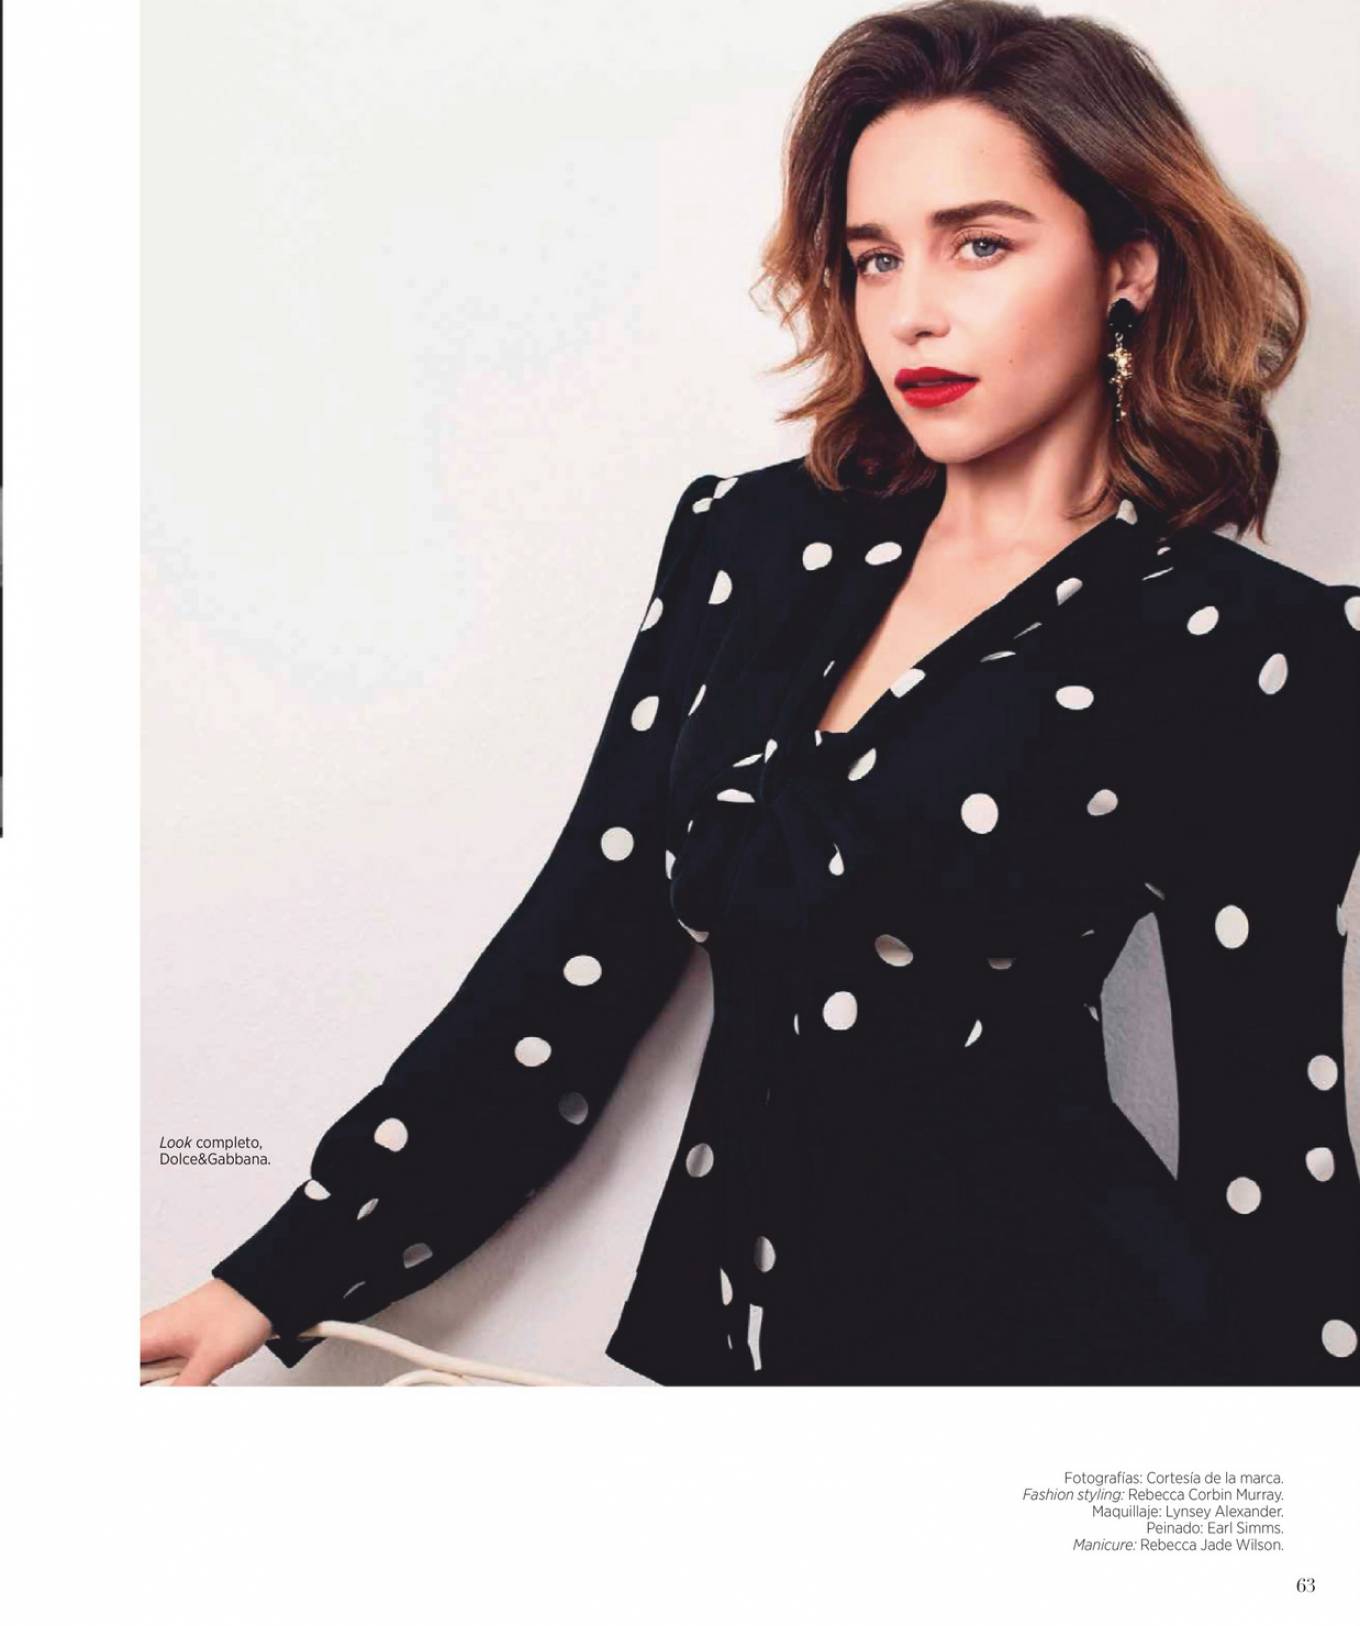 Emilia Clarke 2020 : Emilia Clarke – Harpers Bazaar Mexico 2020-07